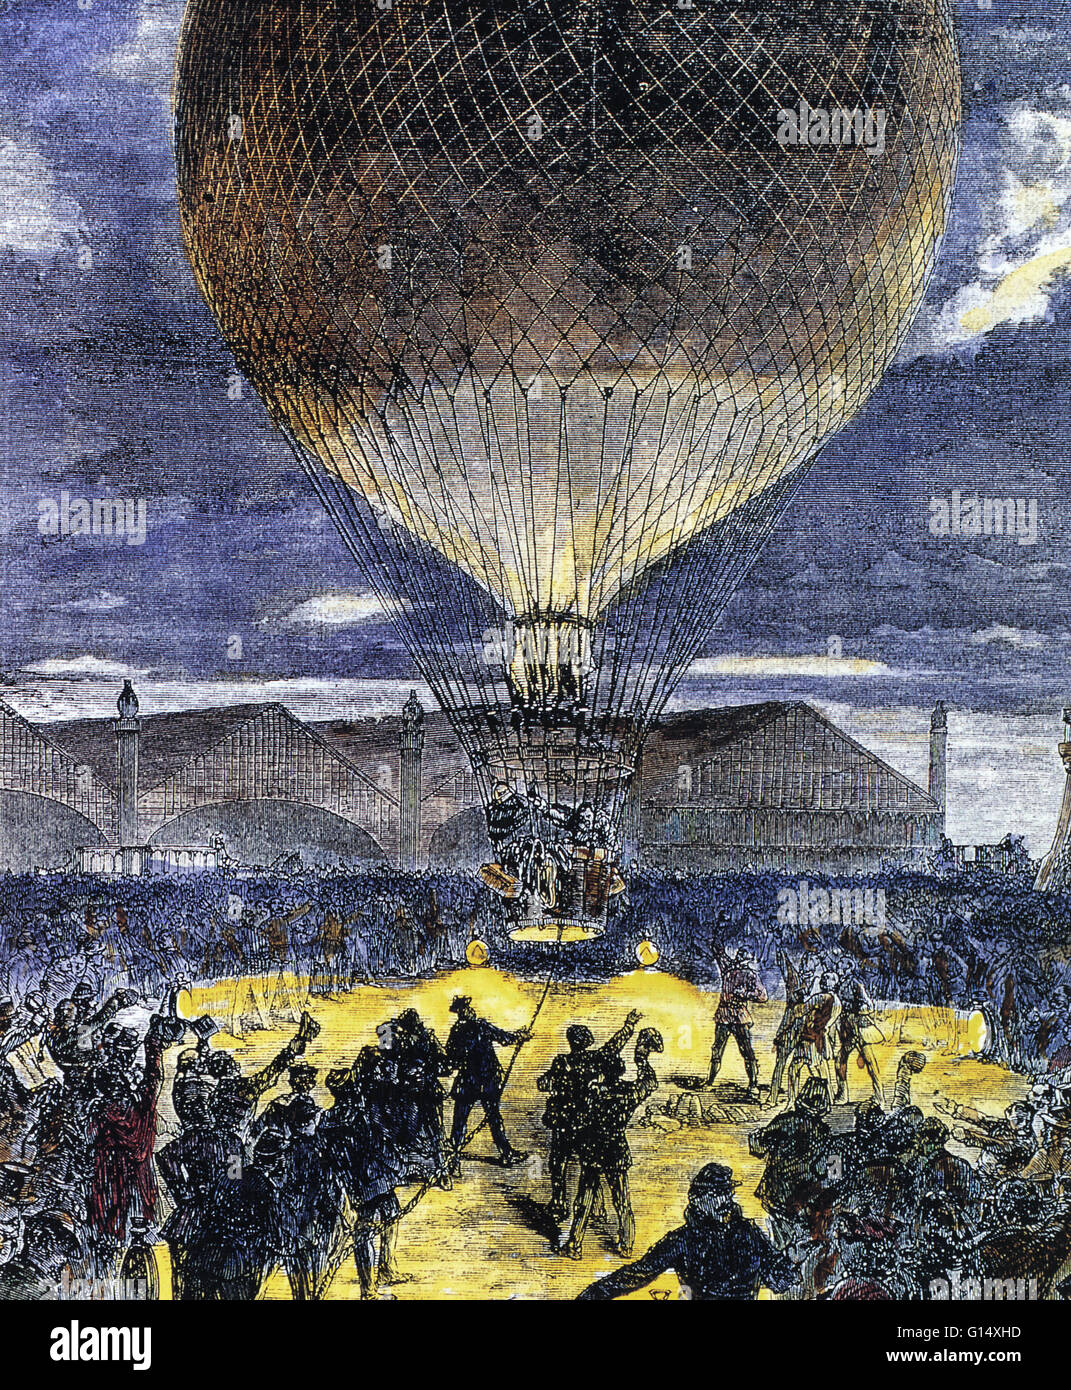 Die Einführung eines Wasserstoff-gefüllten Ballon. Wasserstoff-gefüllten Ballons wurden verwendet, um während der Franco-Preussischer Krieg (1870 / 71) über feindliches Gebiet fliegen. Sie dienten auch zur Personenbeförderung aus Paris während dieses Konflikts. Stockfoto